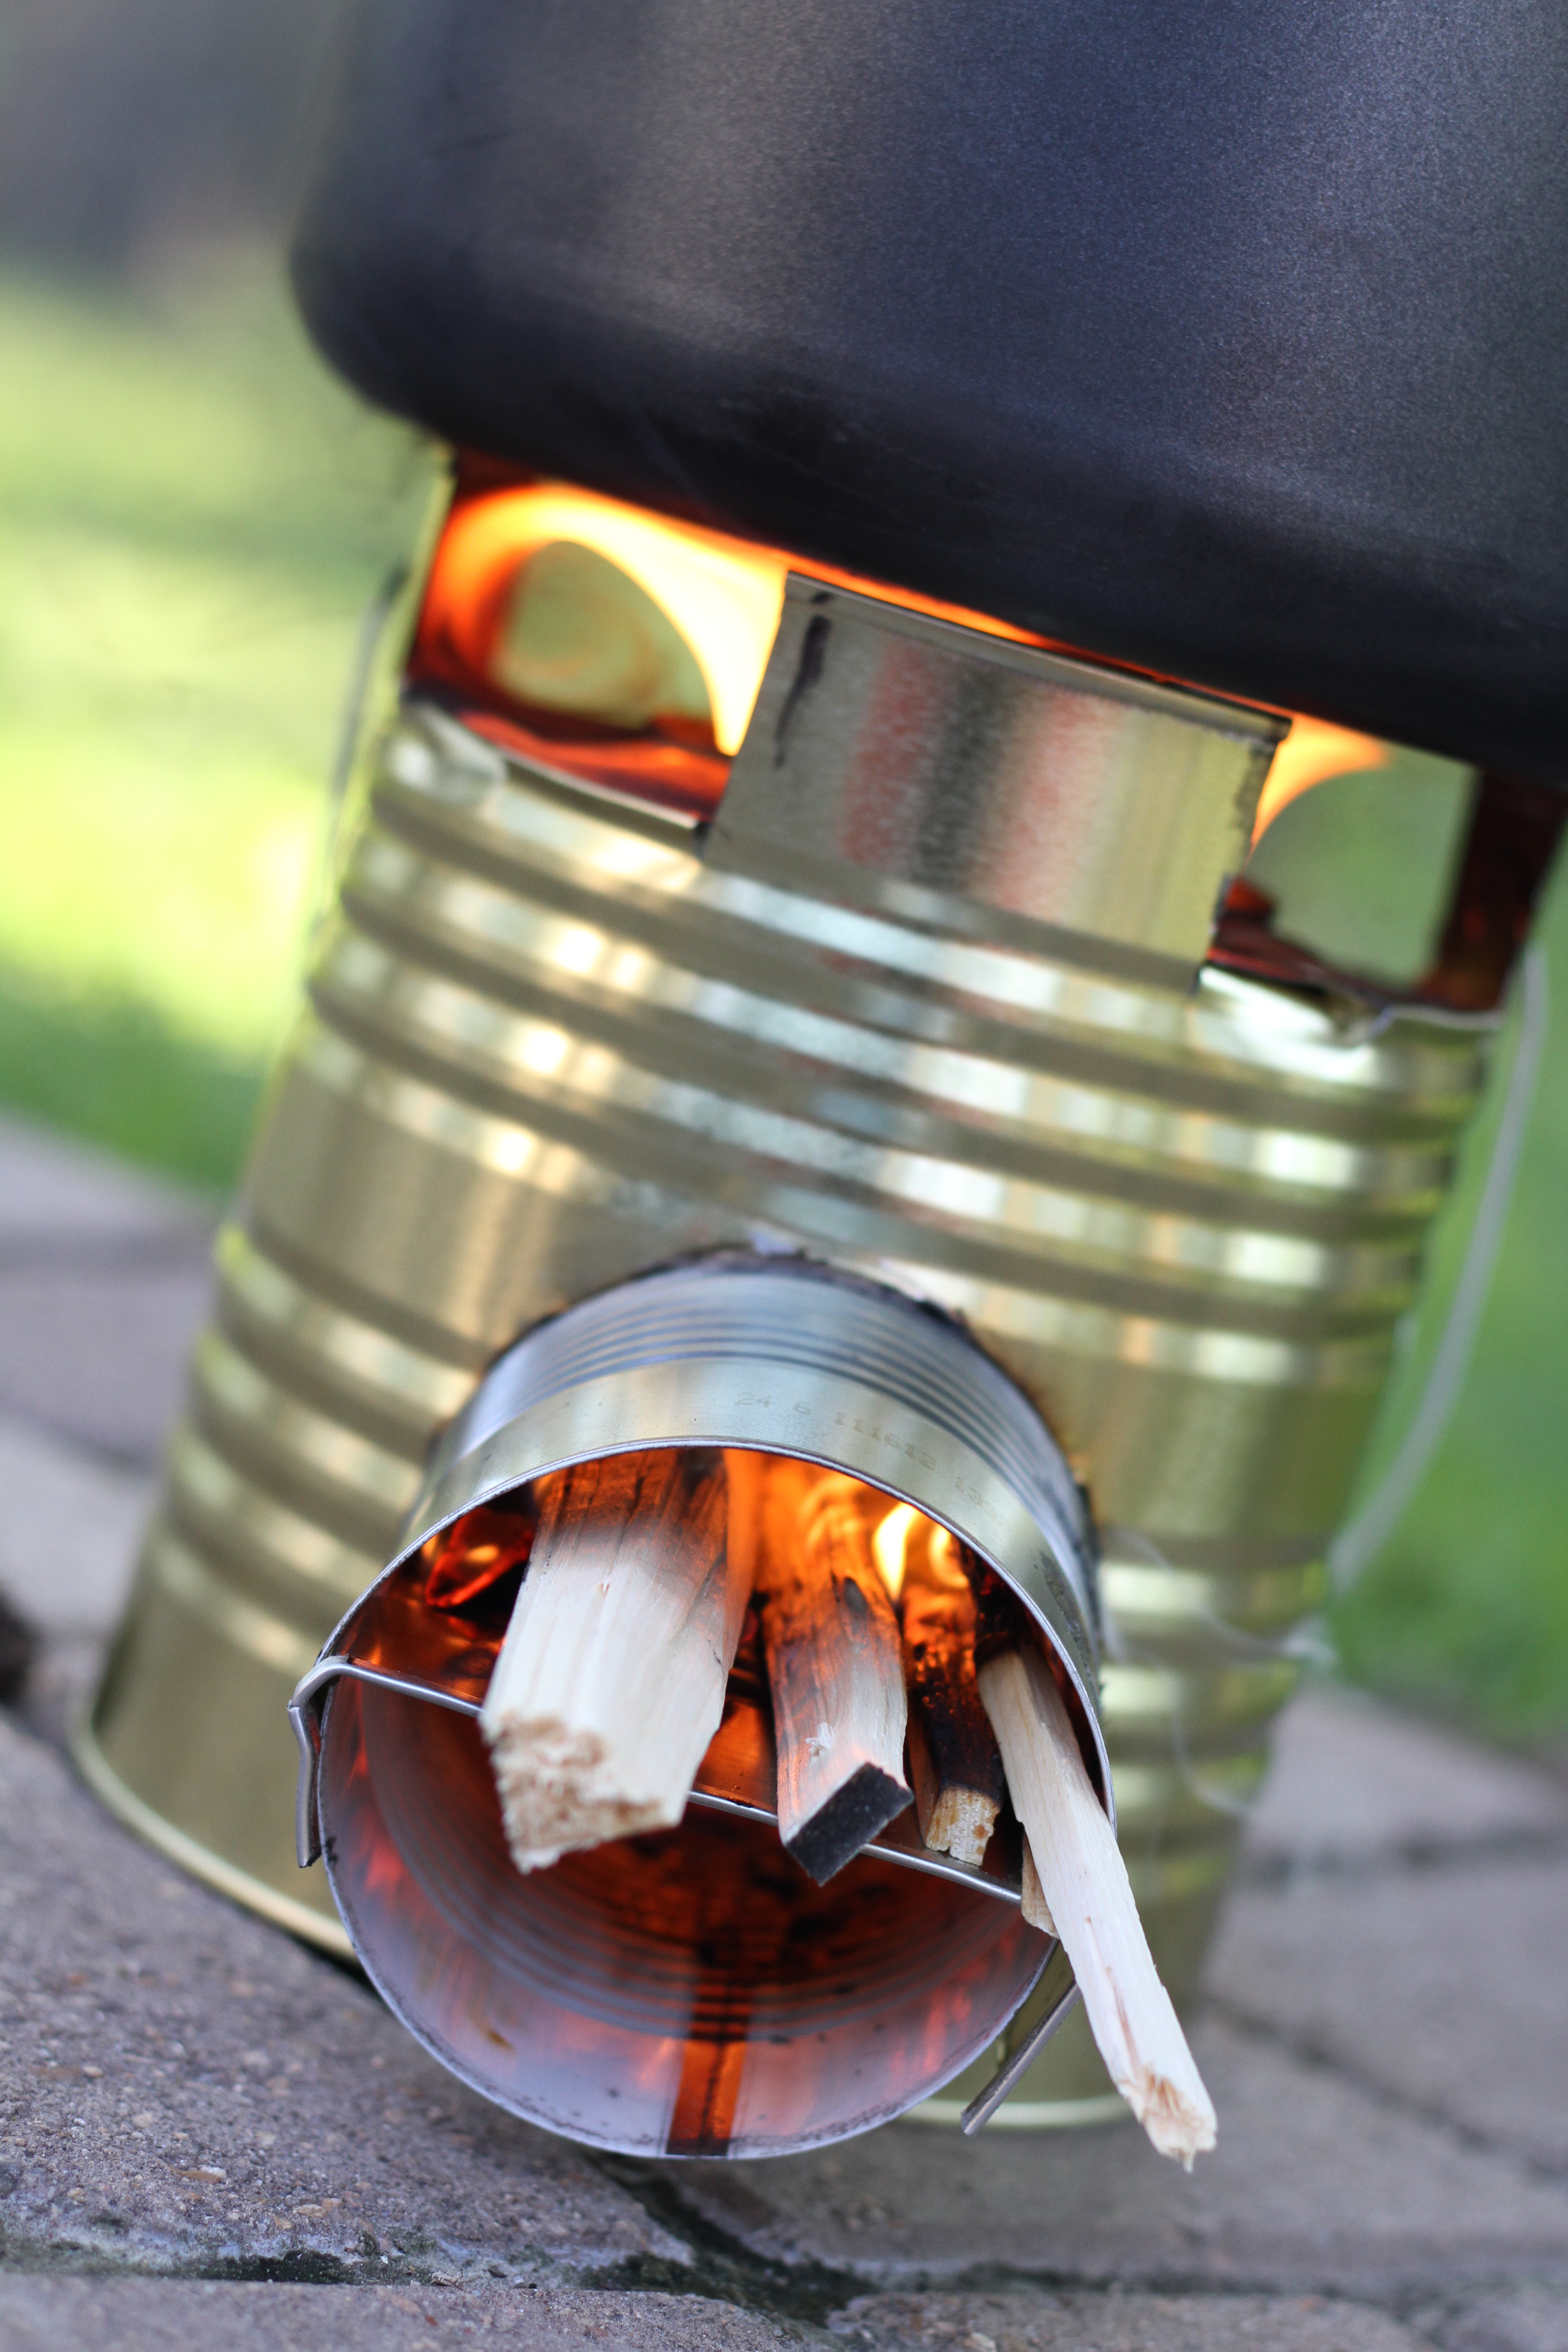 Construir un Rocket Stove-Una de las mejores y más eficientes maneras de cocinar en una emergencia! www.Prepared-Housewives.com alternativecooking # # # offgridcooking powerlesscooking